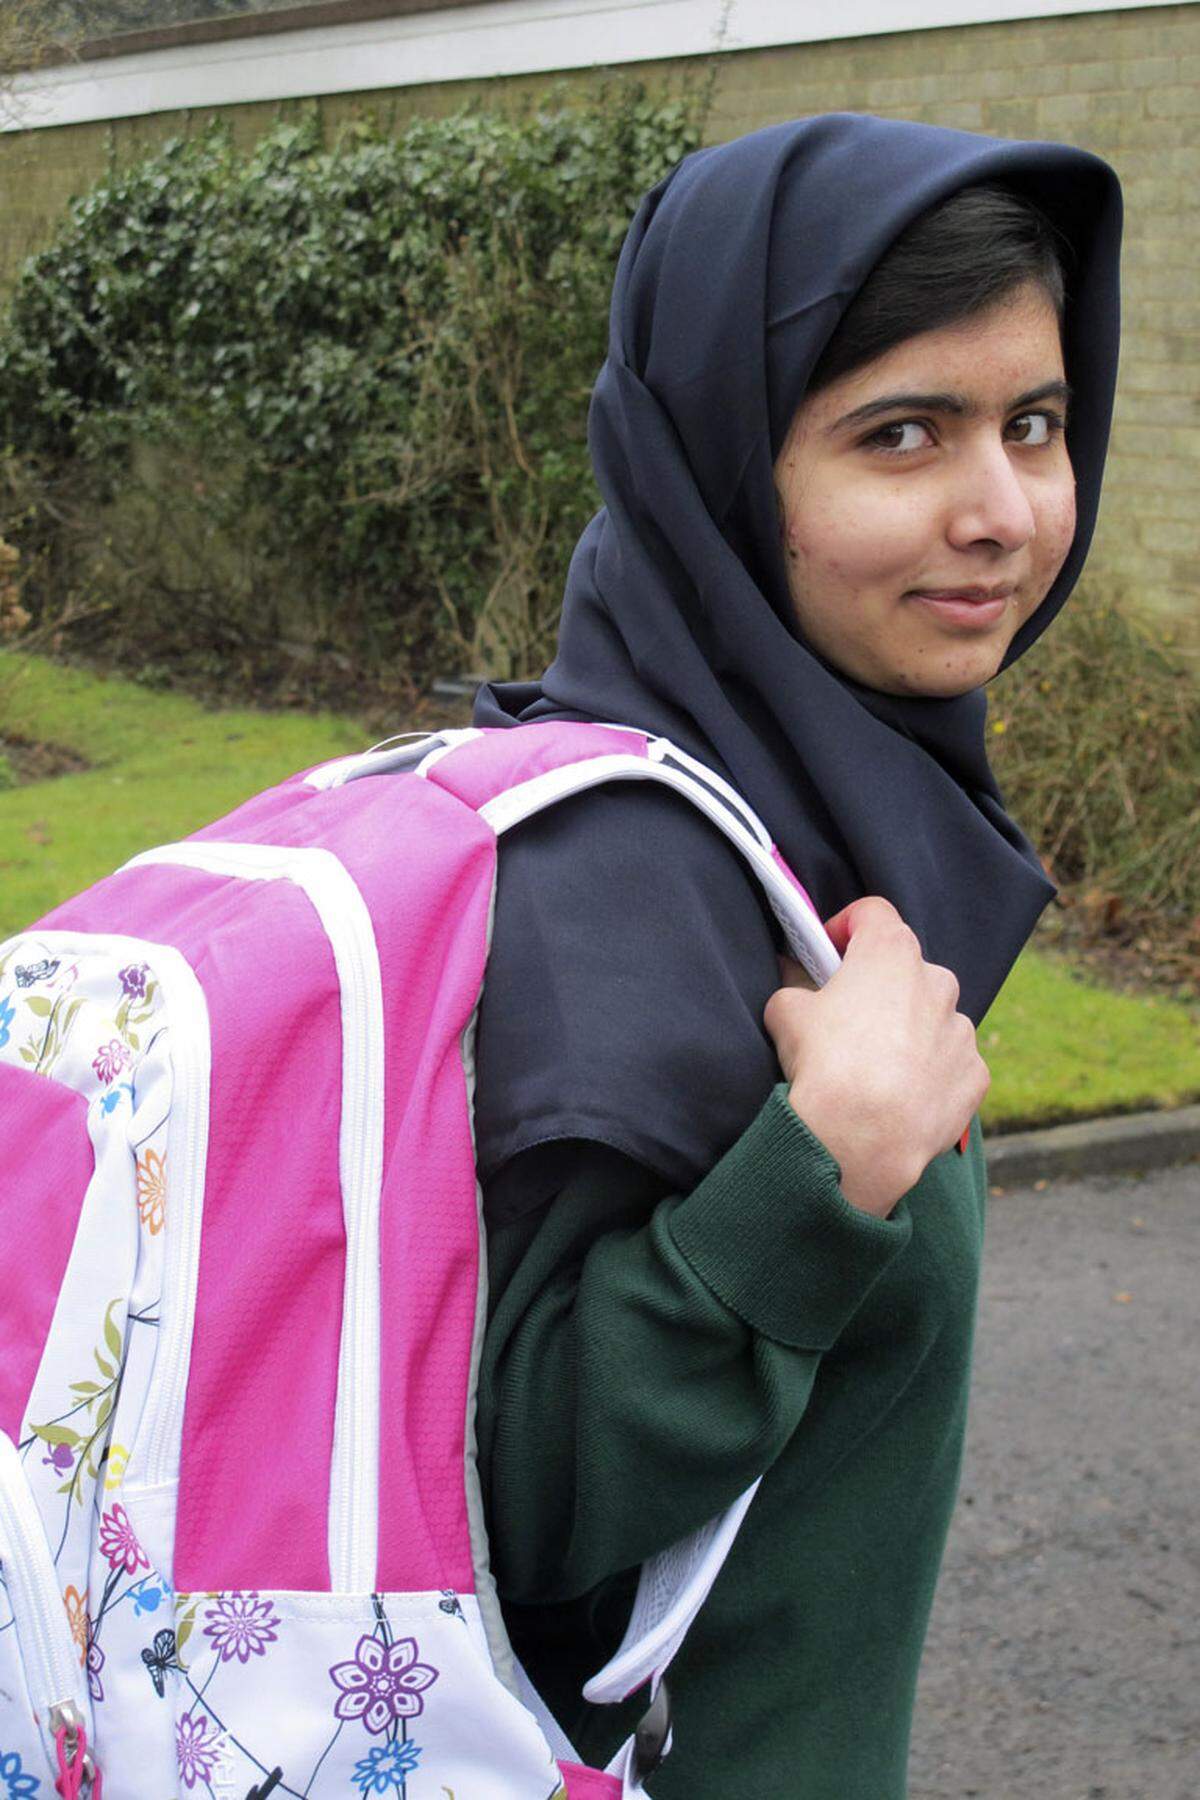 Die BBC strahlte die Notizen auf ihrem Urdu-Programm aus. Malala schilderte darin die Schreckensherrschaft der Taliban, die für zwei Jahre die Kontrolle im gebirgigen Swat-Tal - der "Schweiz Pakistans" - übernommen hatten. Wie zu Zeiten ihres Regiments in Afghanistan verbannten sie die Mädchen aus den Schulen und führten wieder die Burka ein. Eindringlich beschrieb sie in ihren Notizen die Angst vor deren Willkür. Vor allem jedoch äußerte sie ihren unbändigen Wunsch, wieder die Schule besuchen zu dürfen. Pakistan zeichnete sie mit Preisen aus, darunter dem Friedenspreis. Der Anonymität entrissen wurde das Mädchen den Taliban als Exempel für die "westliche Kultur" zum Dorn im Auge.